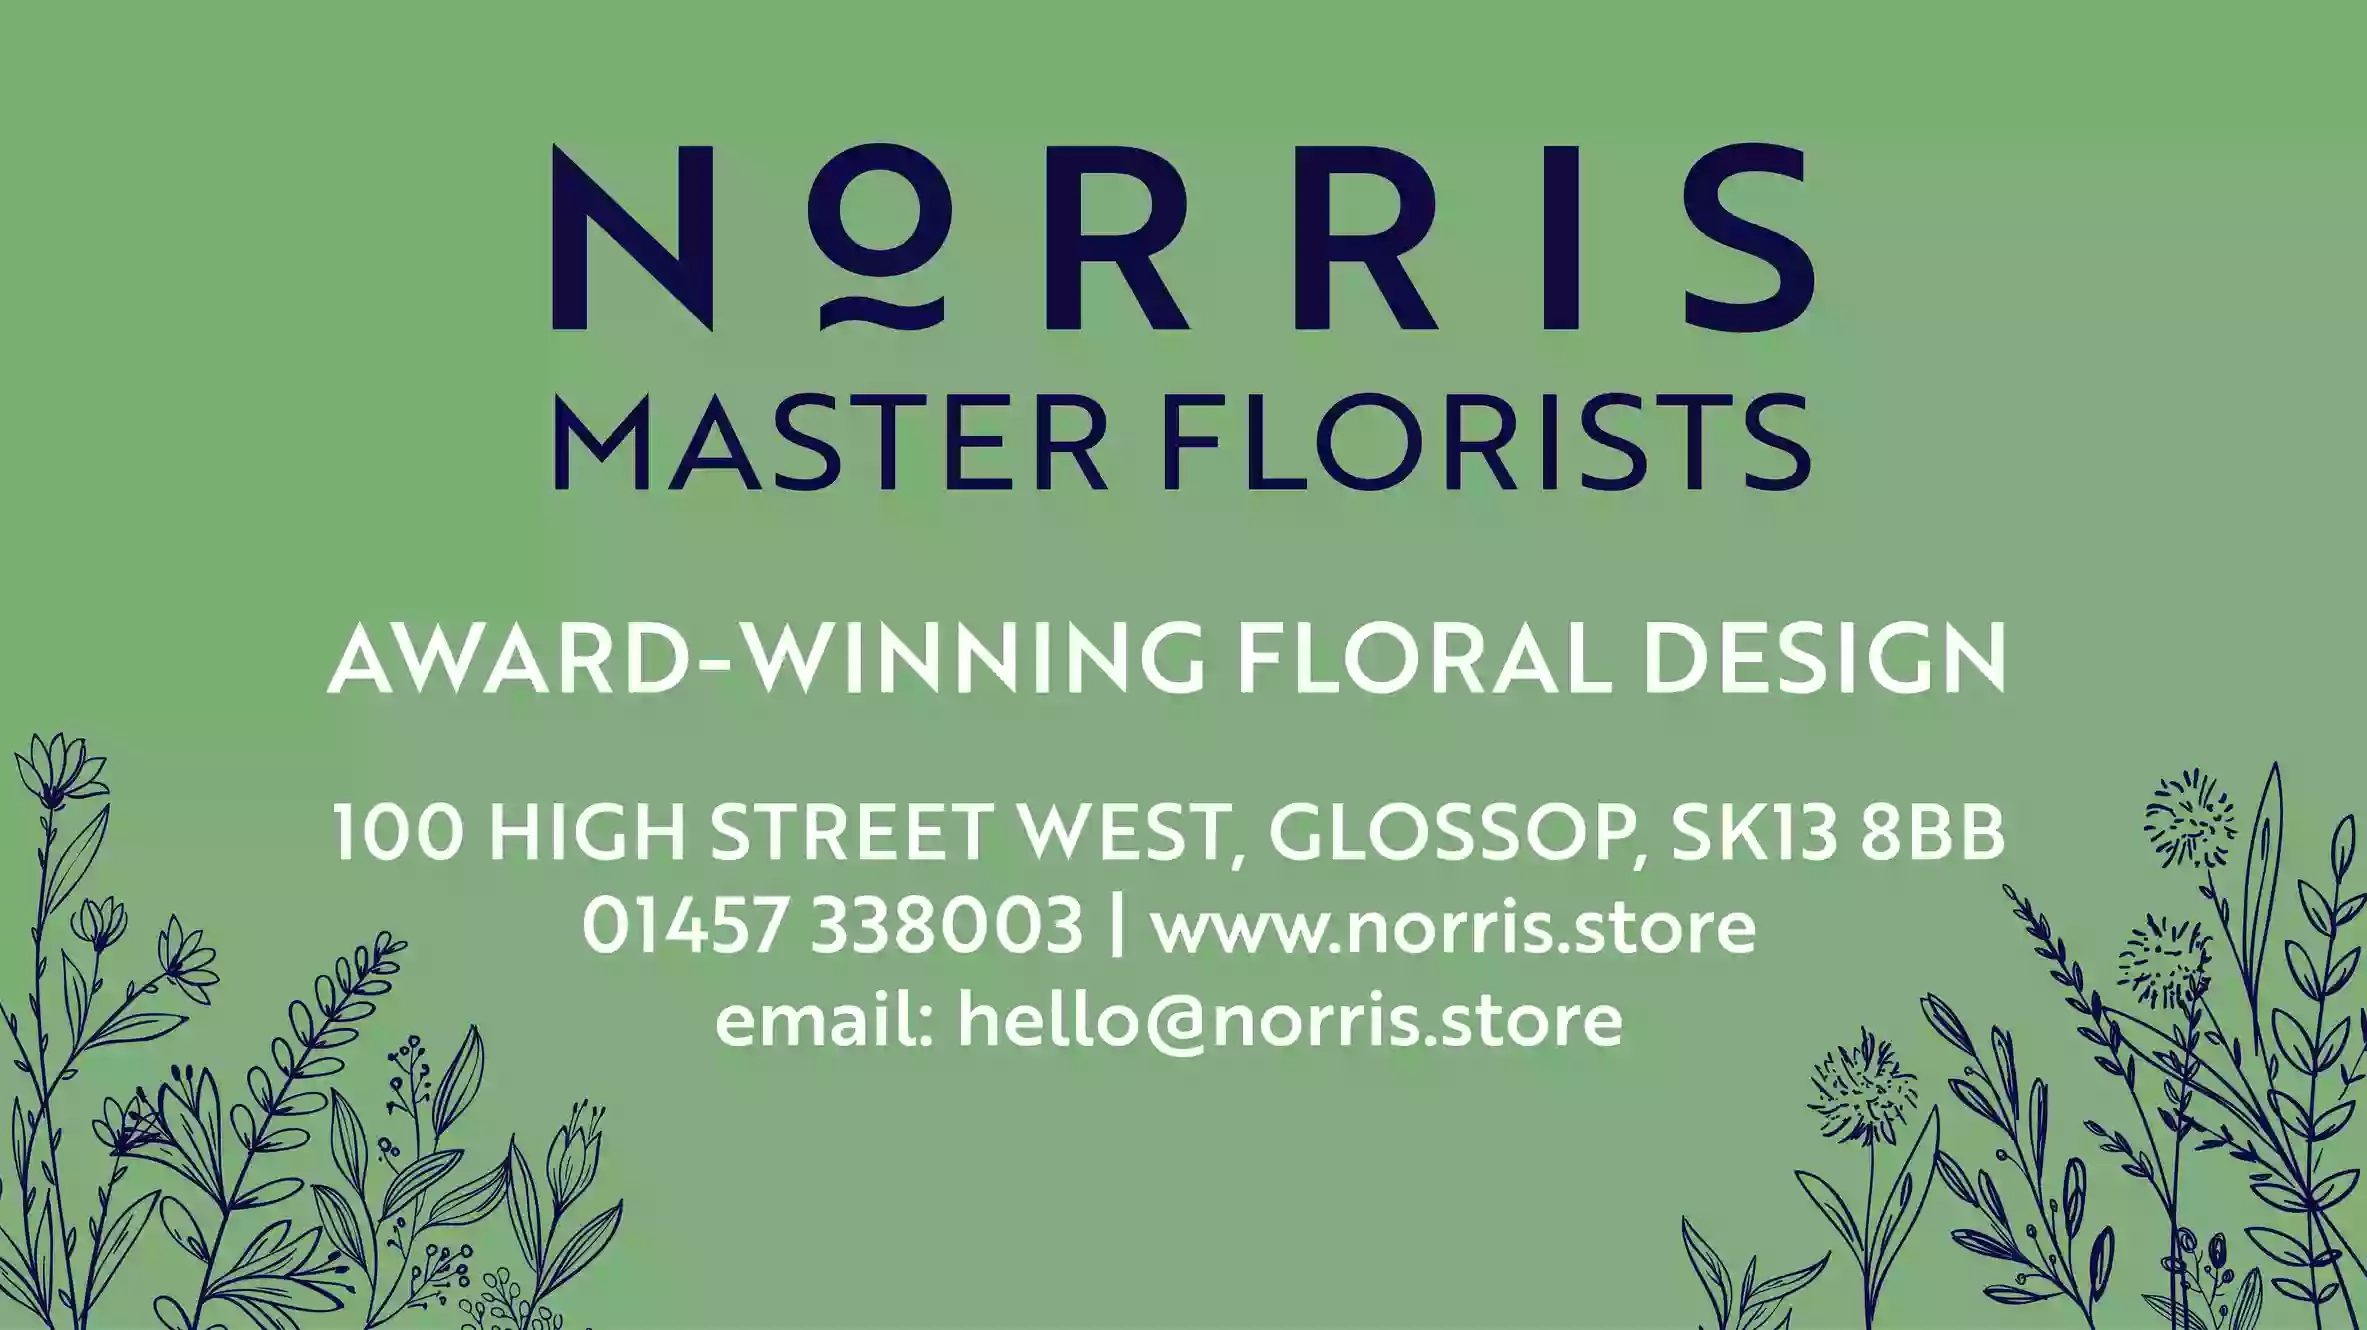 Norris Floristry